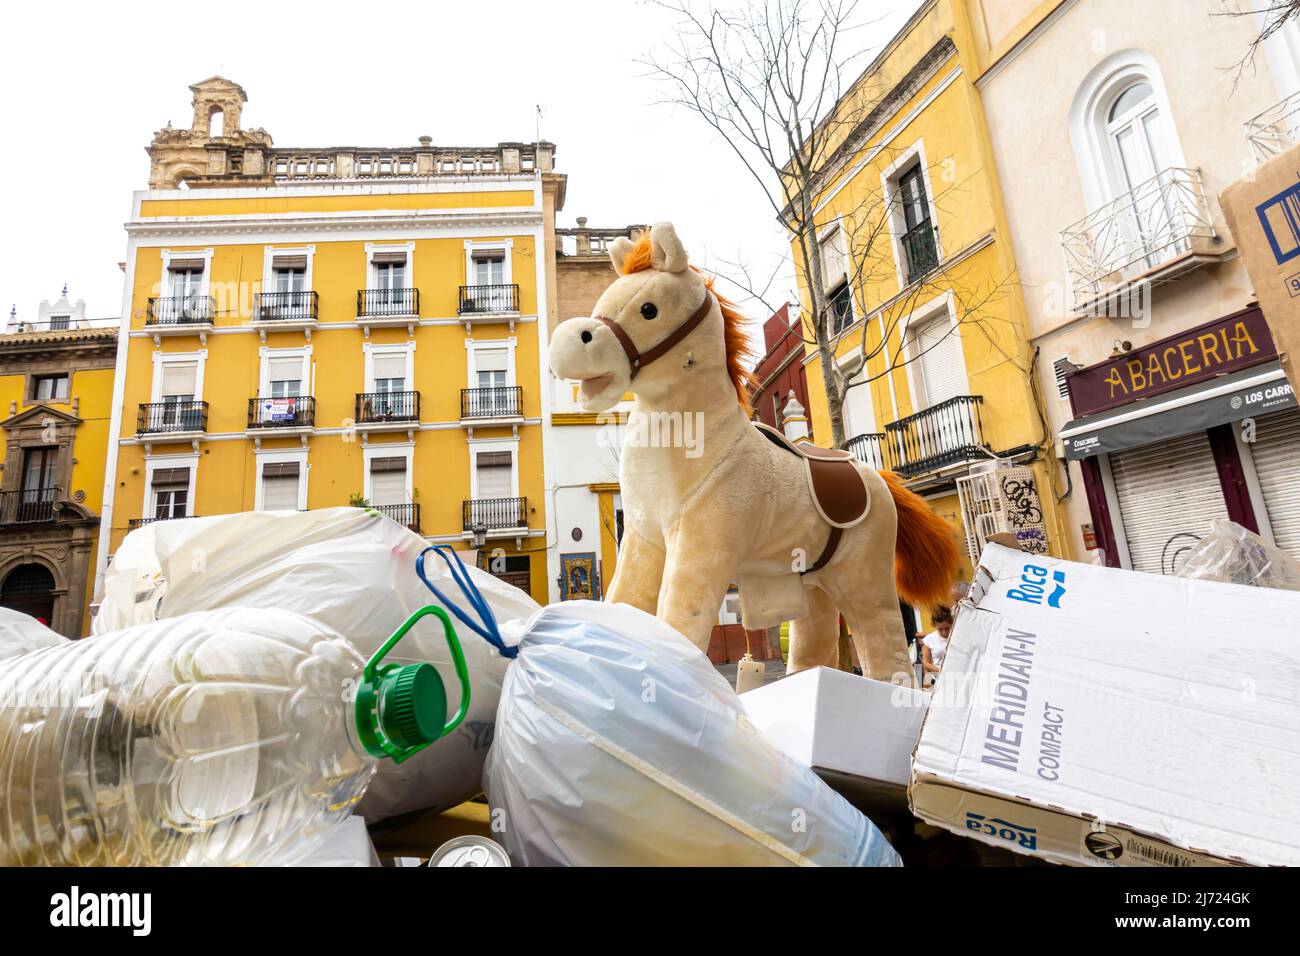 Un giocattolo da cavallo per bambini sulla parte superiore del contenitore dei rifiuti dopo la fiera in Plaza de Monte-Sion, Feria, Siviglia, Andalusia, Spagna Foto Stock